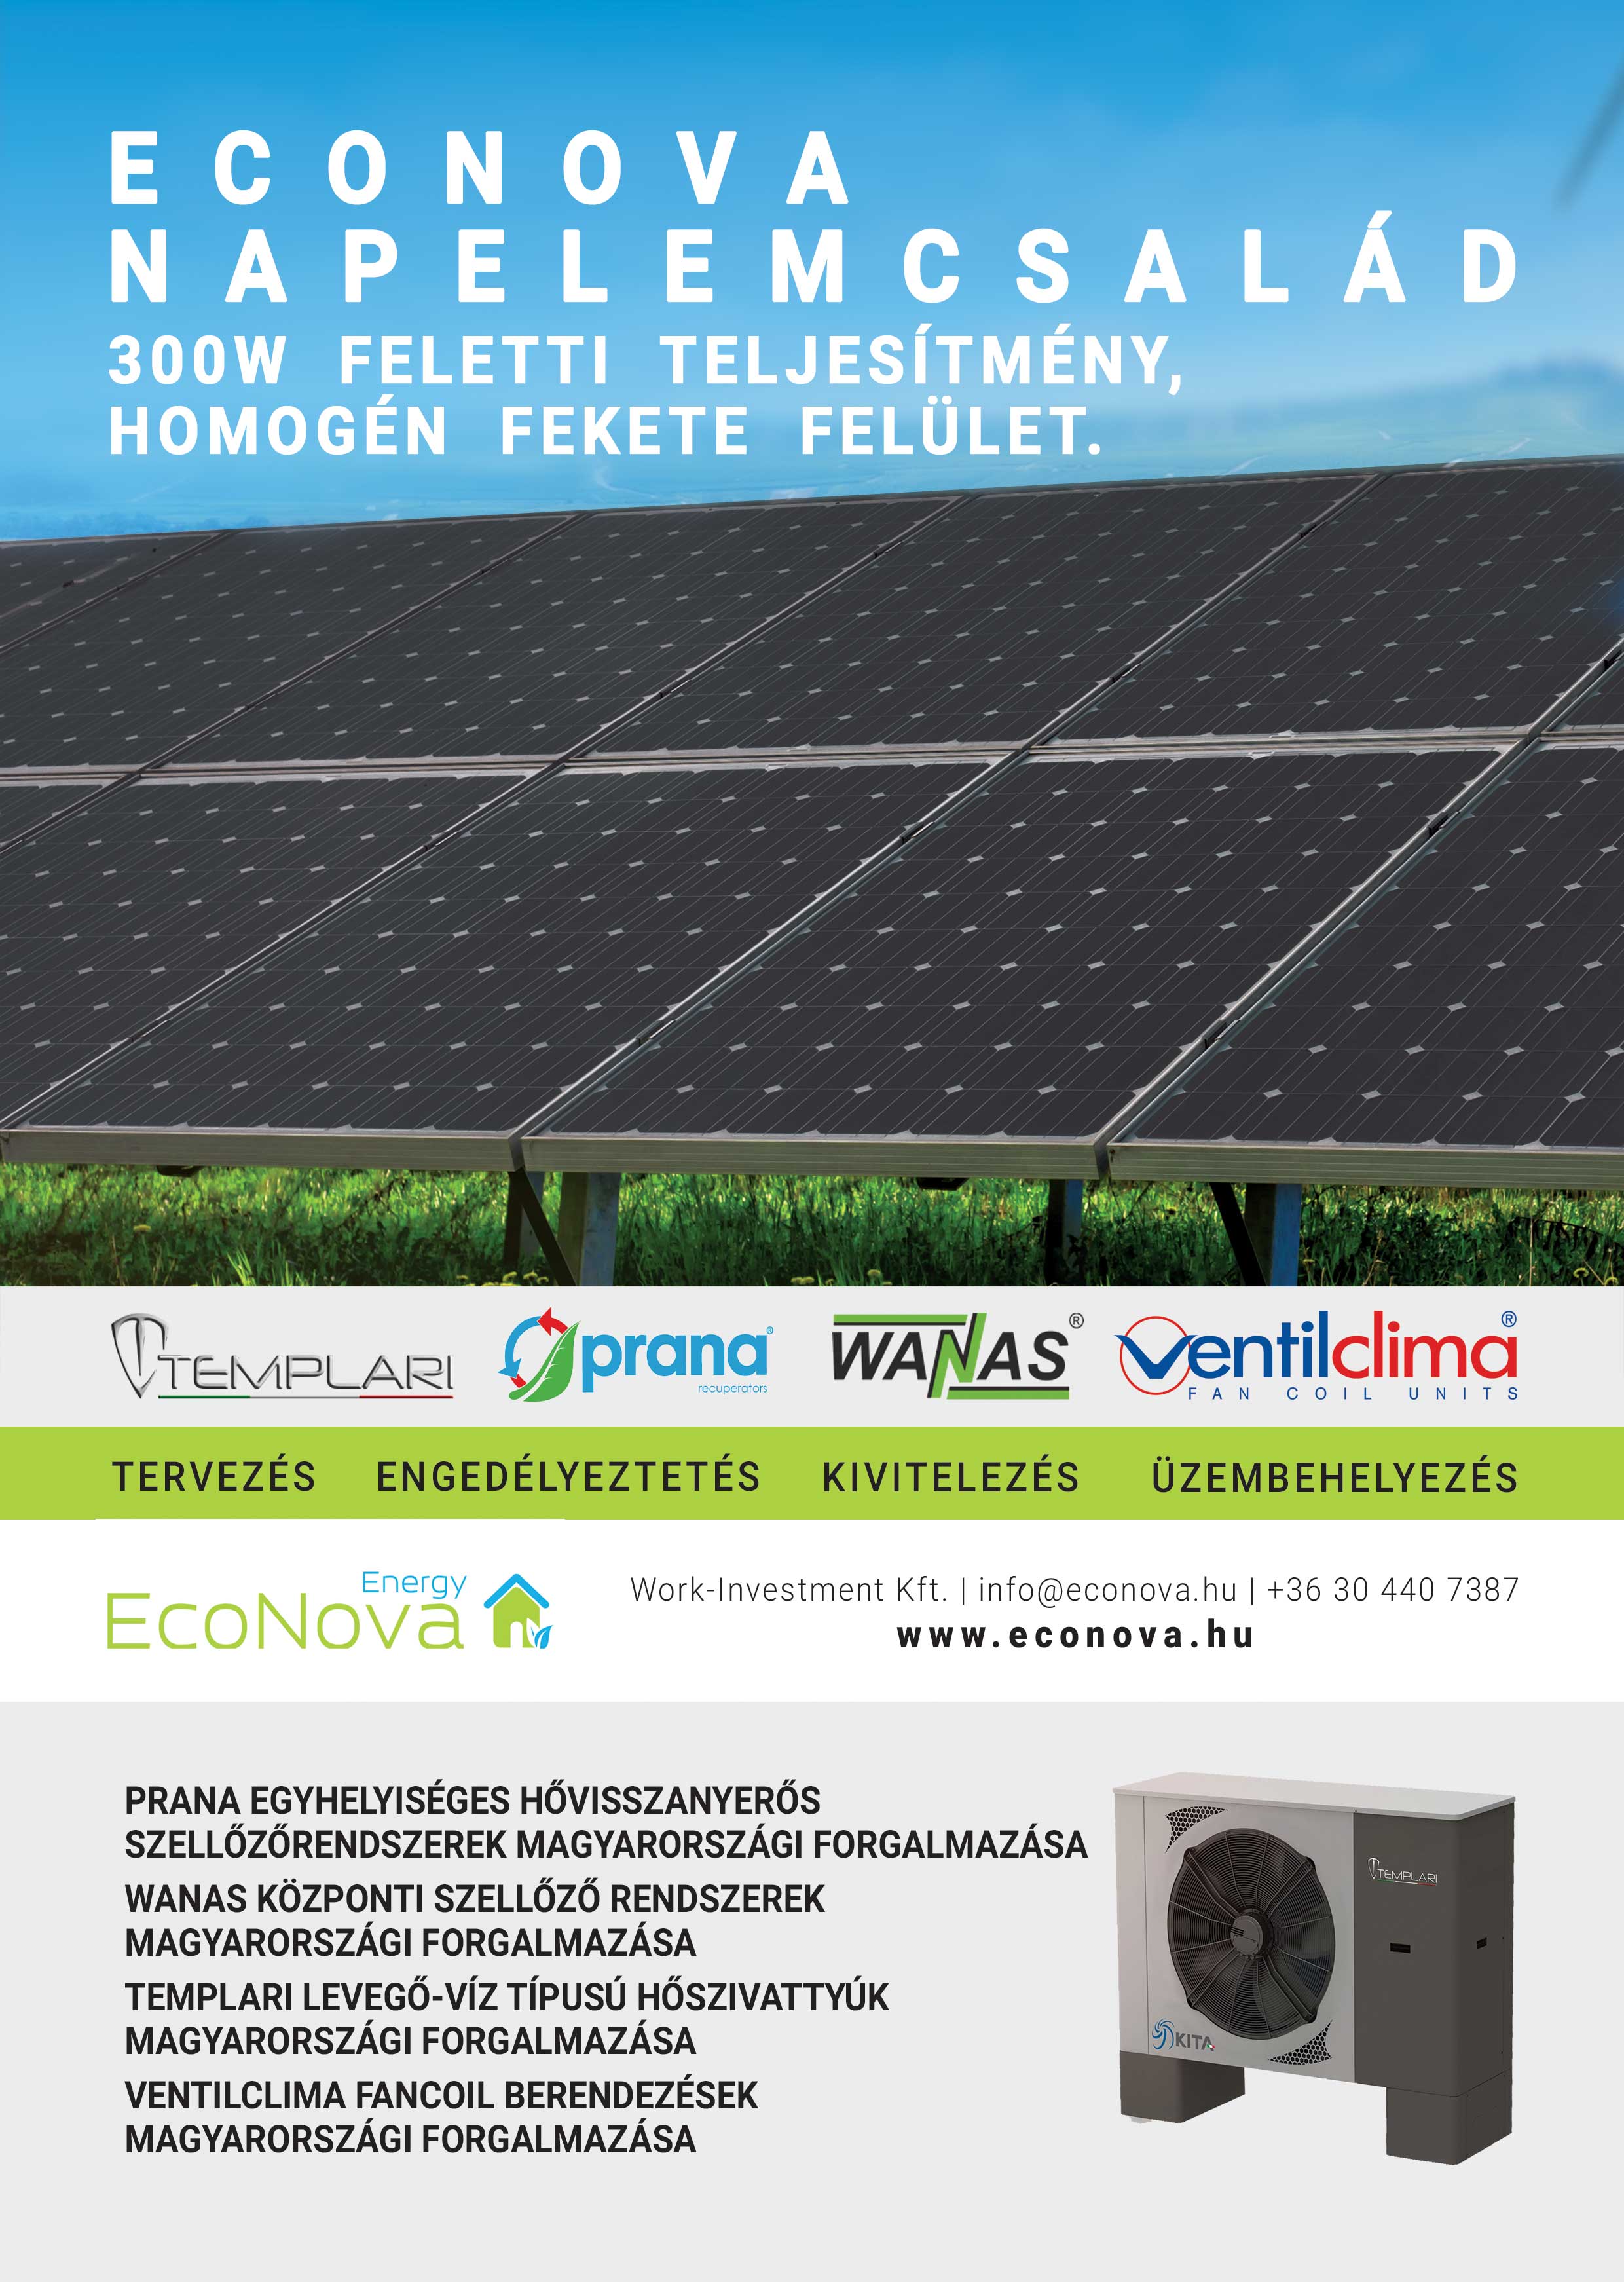 EcoNova napelemcsalád - Work-Investment Kft.